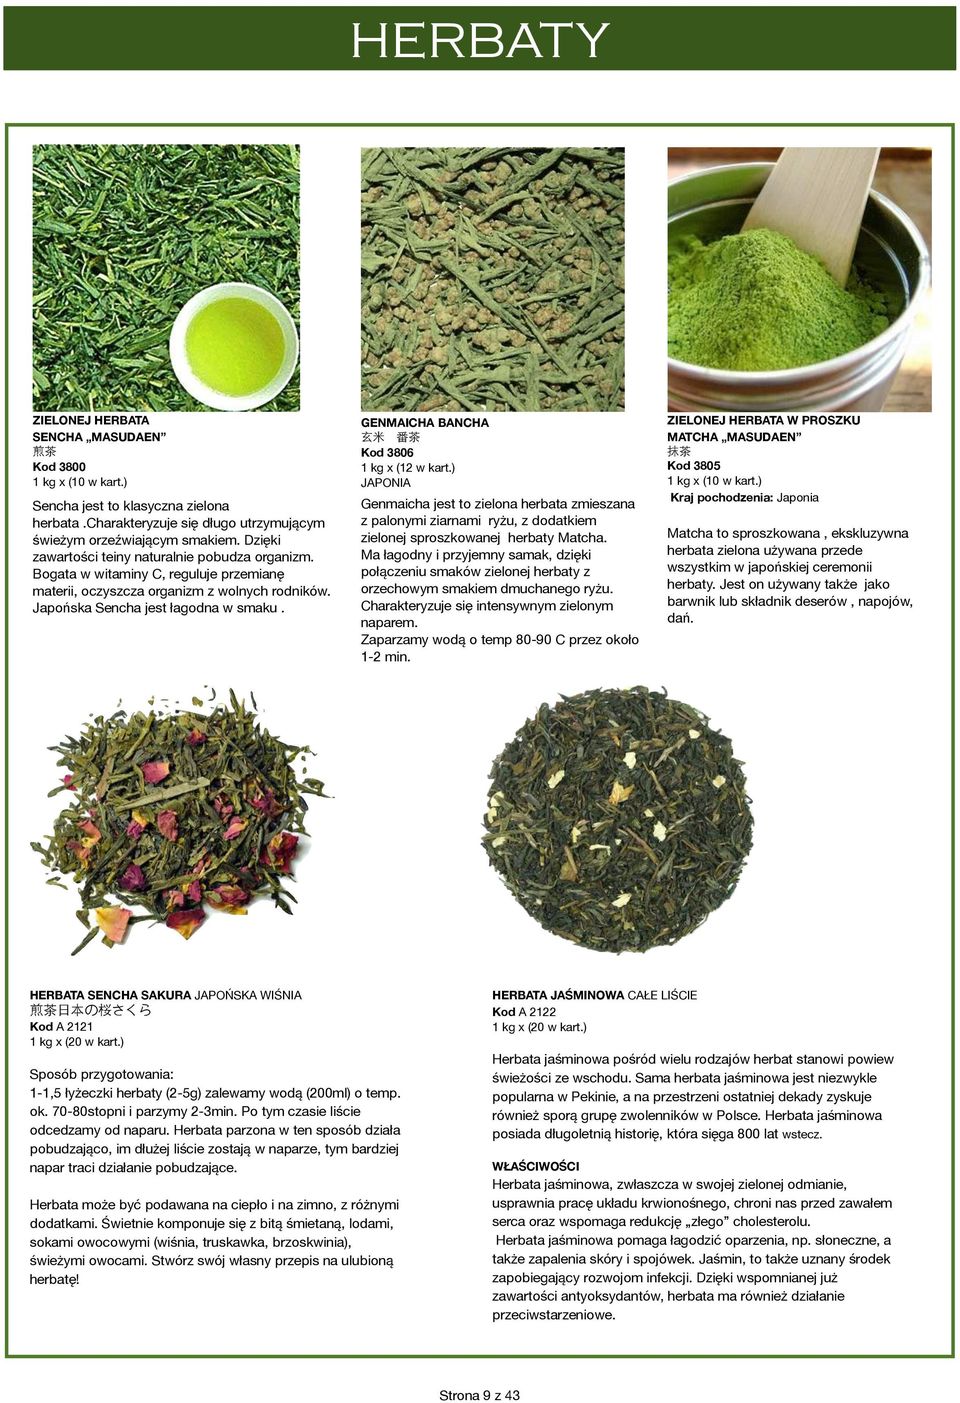 ZIELONEJ HERBATA / GENMAICHA BANCHA 番 茶 Kod 3806 1 kg x (12 w kart.) JAPONIA Genmaicha jest to zielona herbata zmieszana z palonymi ziarnami ryżu, z dodatkiem zielonej sproszkowanej herbaty Matcha.